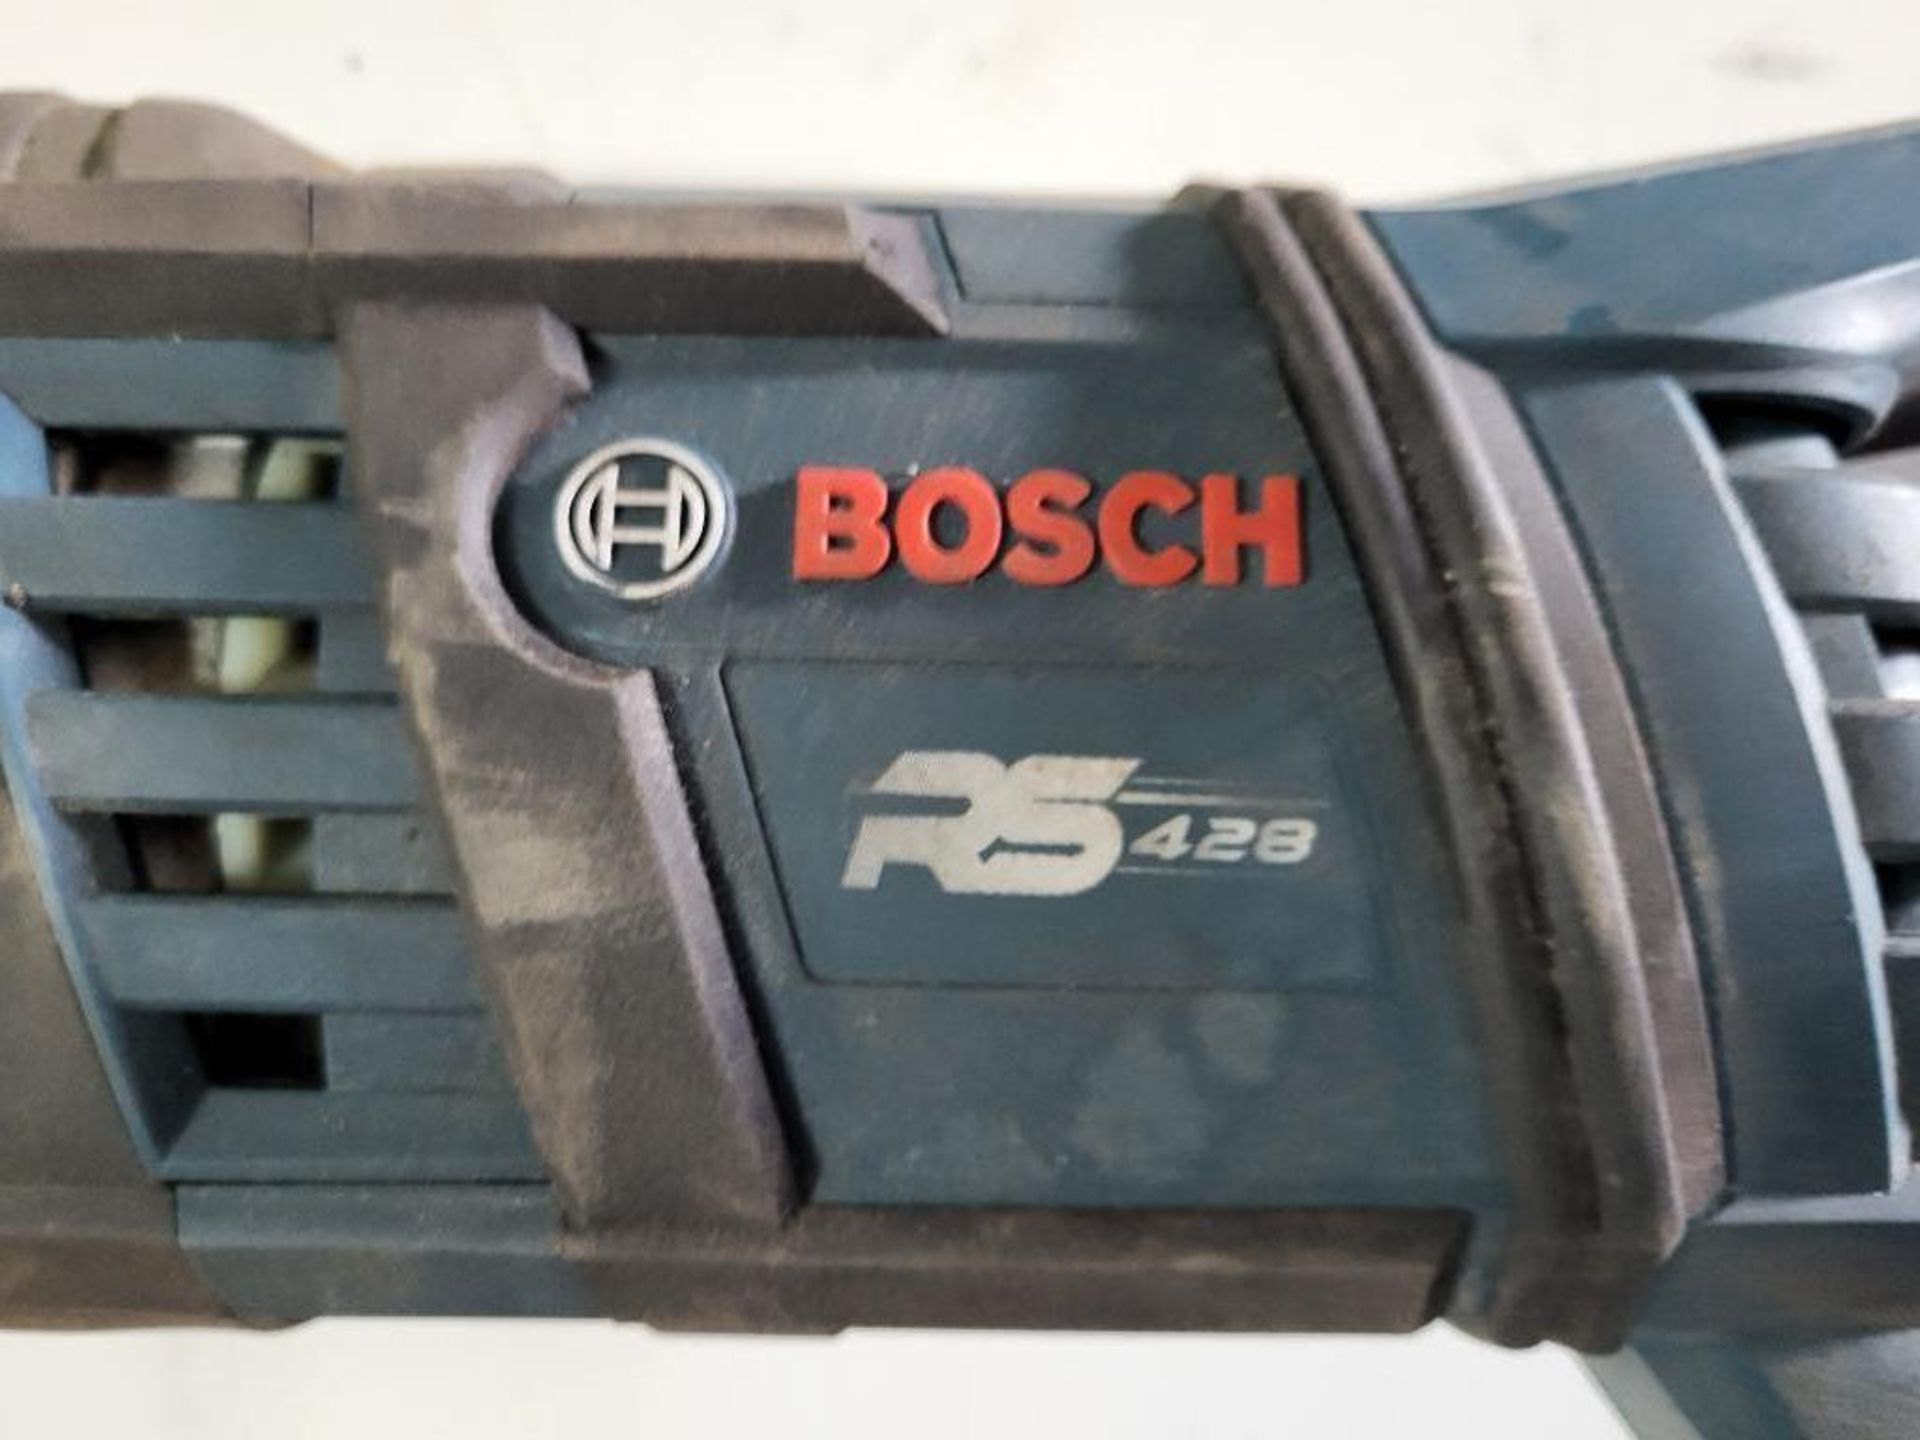 Bosch Sawzall M/N RS428 - Bild 2 aus 3